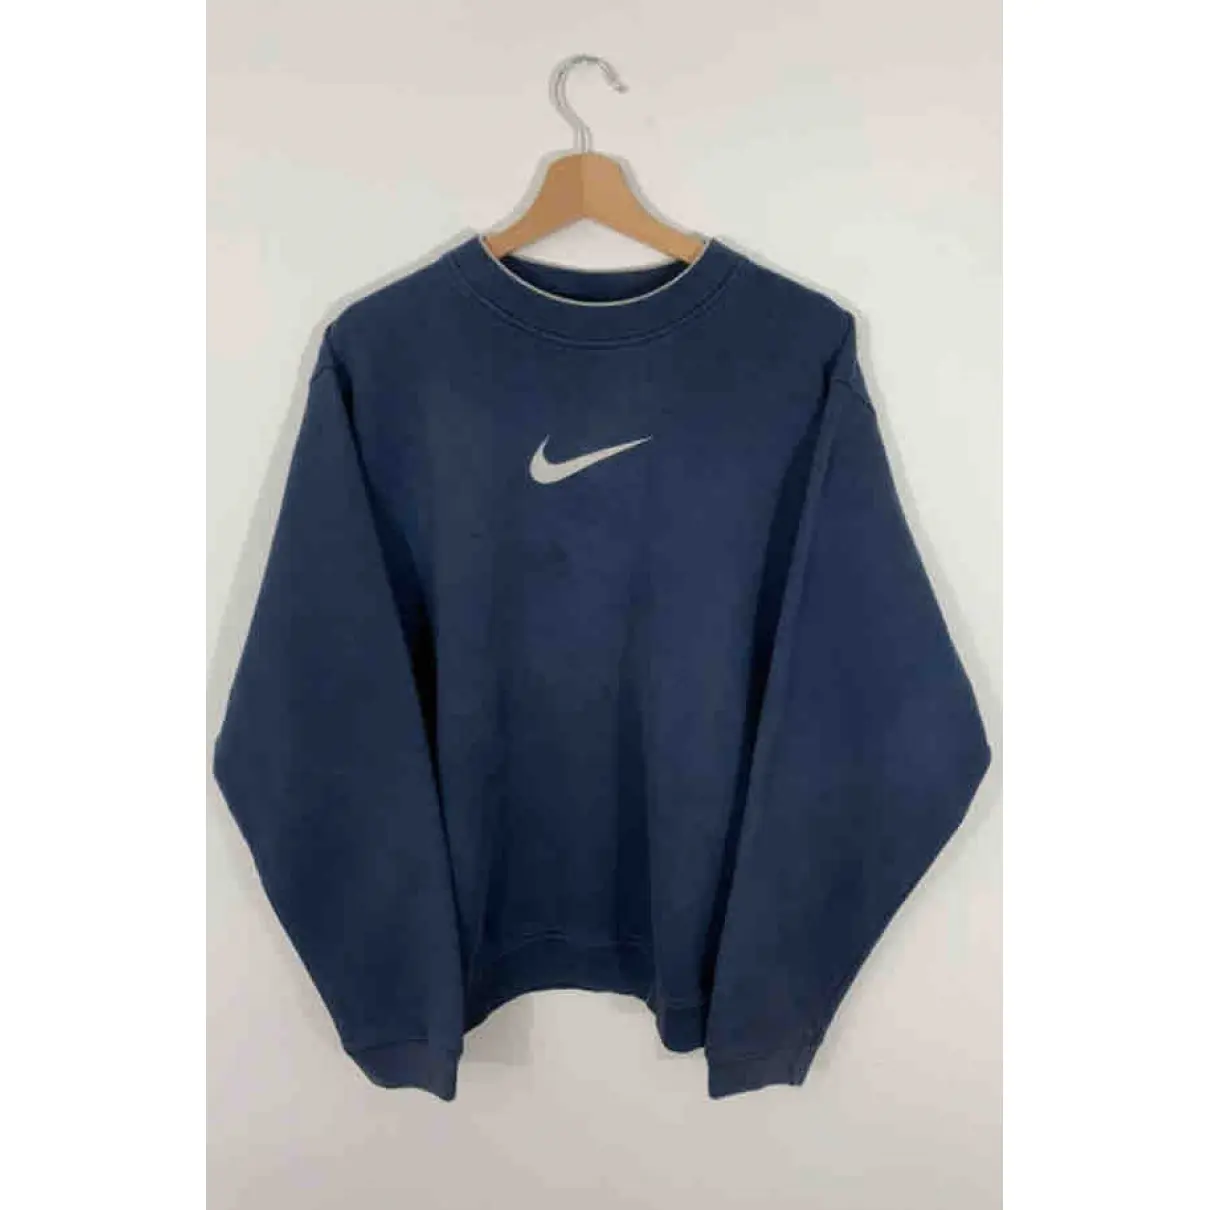 Buy Nike Blue Cotton Knitwear & Sweatshirt online